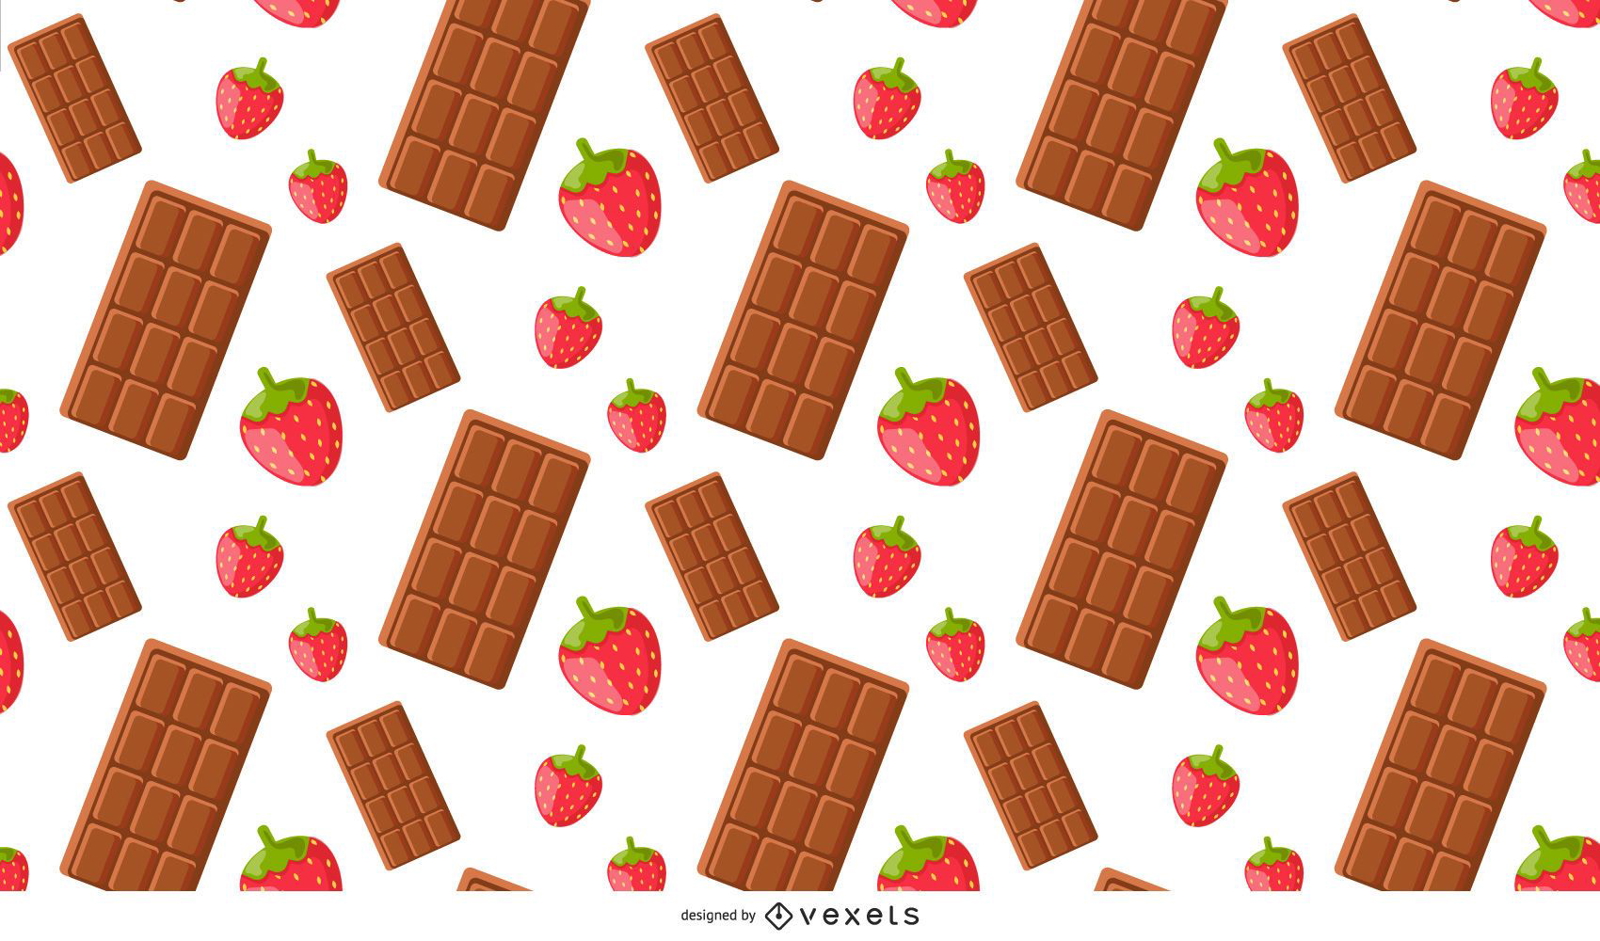 S??es Erdbeer- und Schokoladenmuster